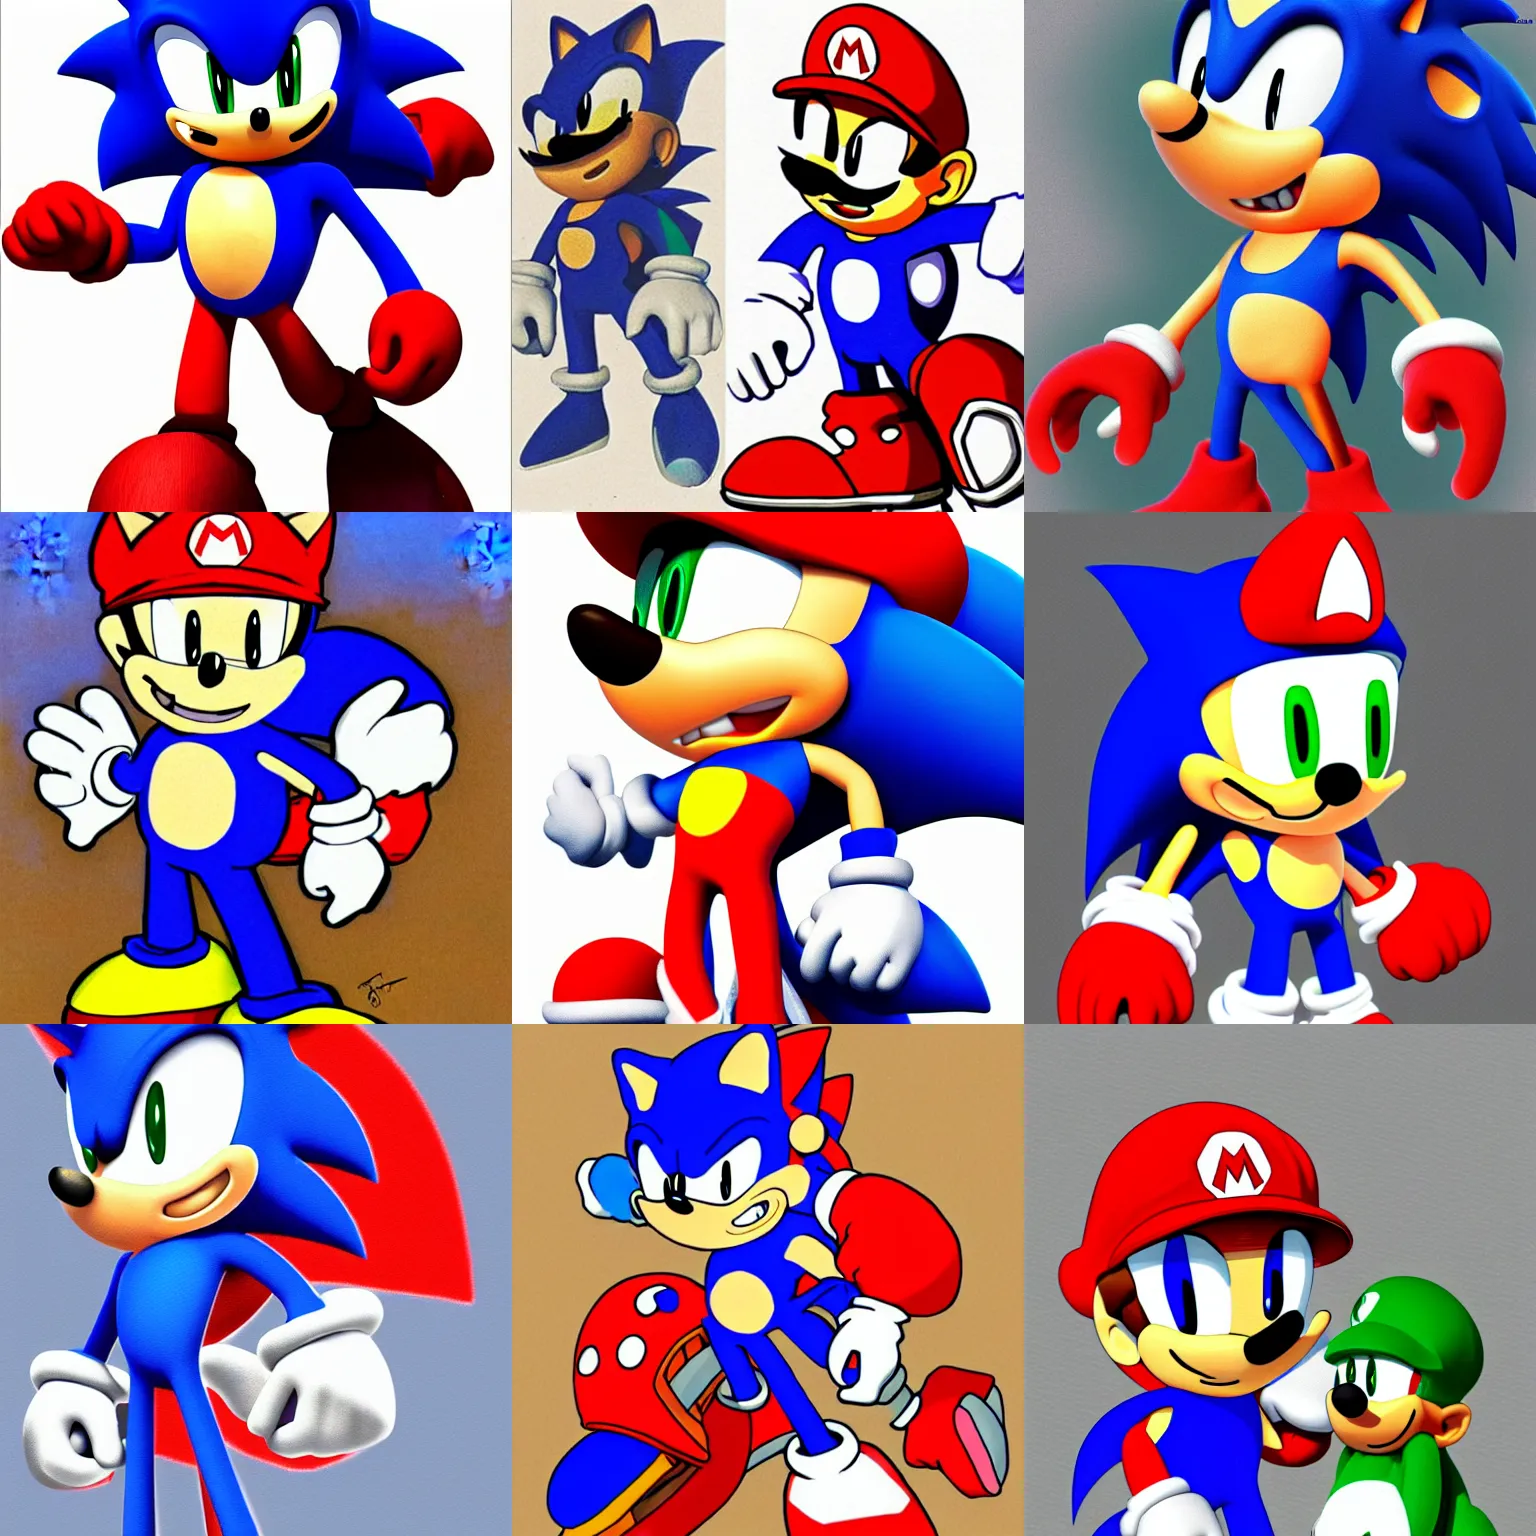 Classic Sonic VS Classic Mario Sprite Art